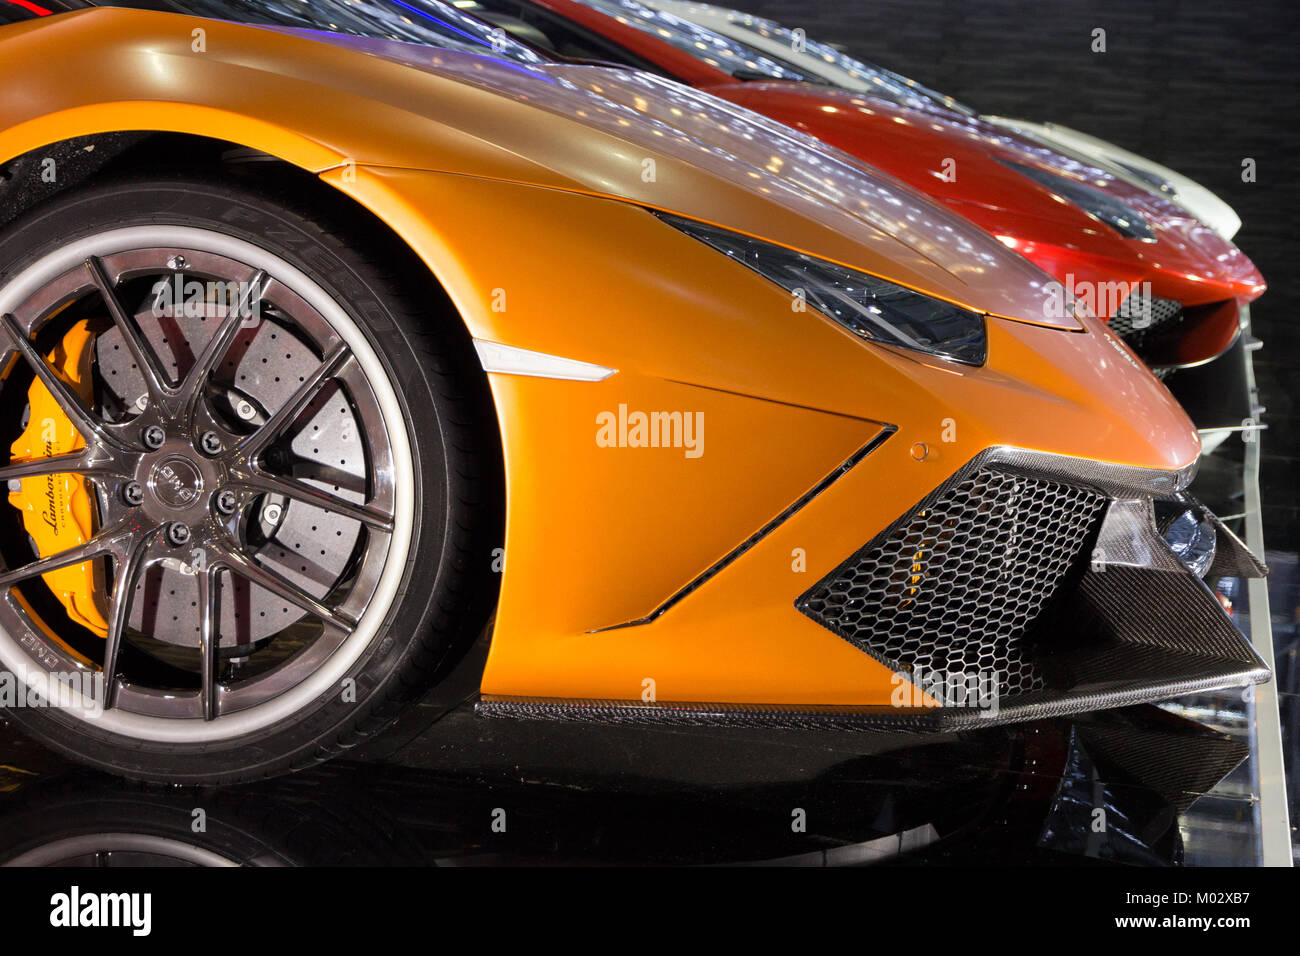 Genf, Schweiz - 4. März, 2015: Maßgeschneiderte Lamborghini supercars aus DMC Exotisches Auto Tuning LTD. Bei der 85. Internationale Automobilsalon in Genf Pa Stockfoto